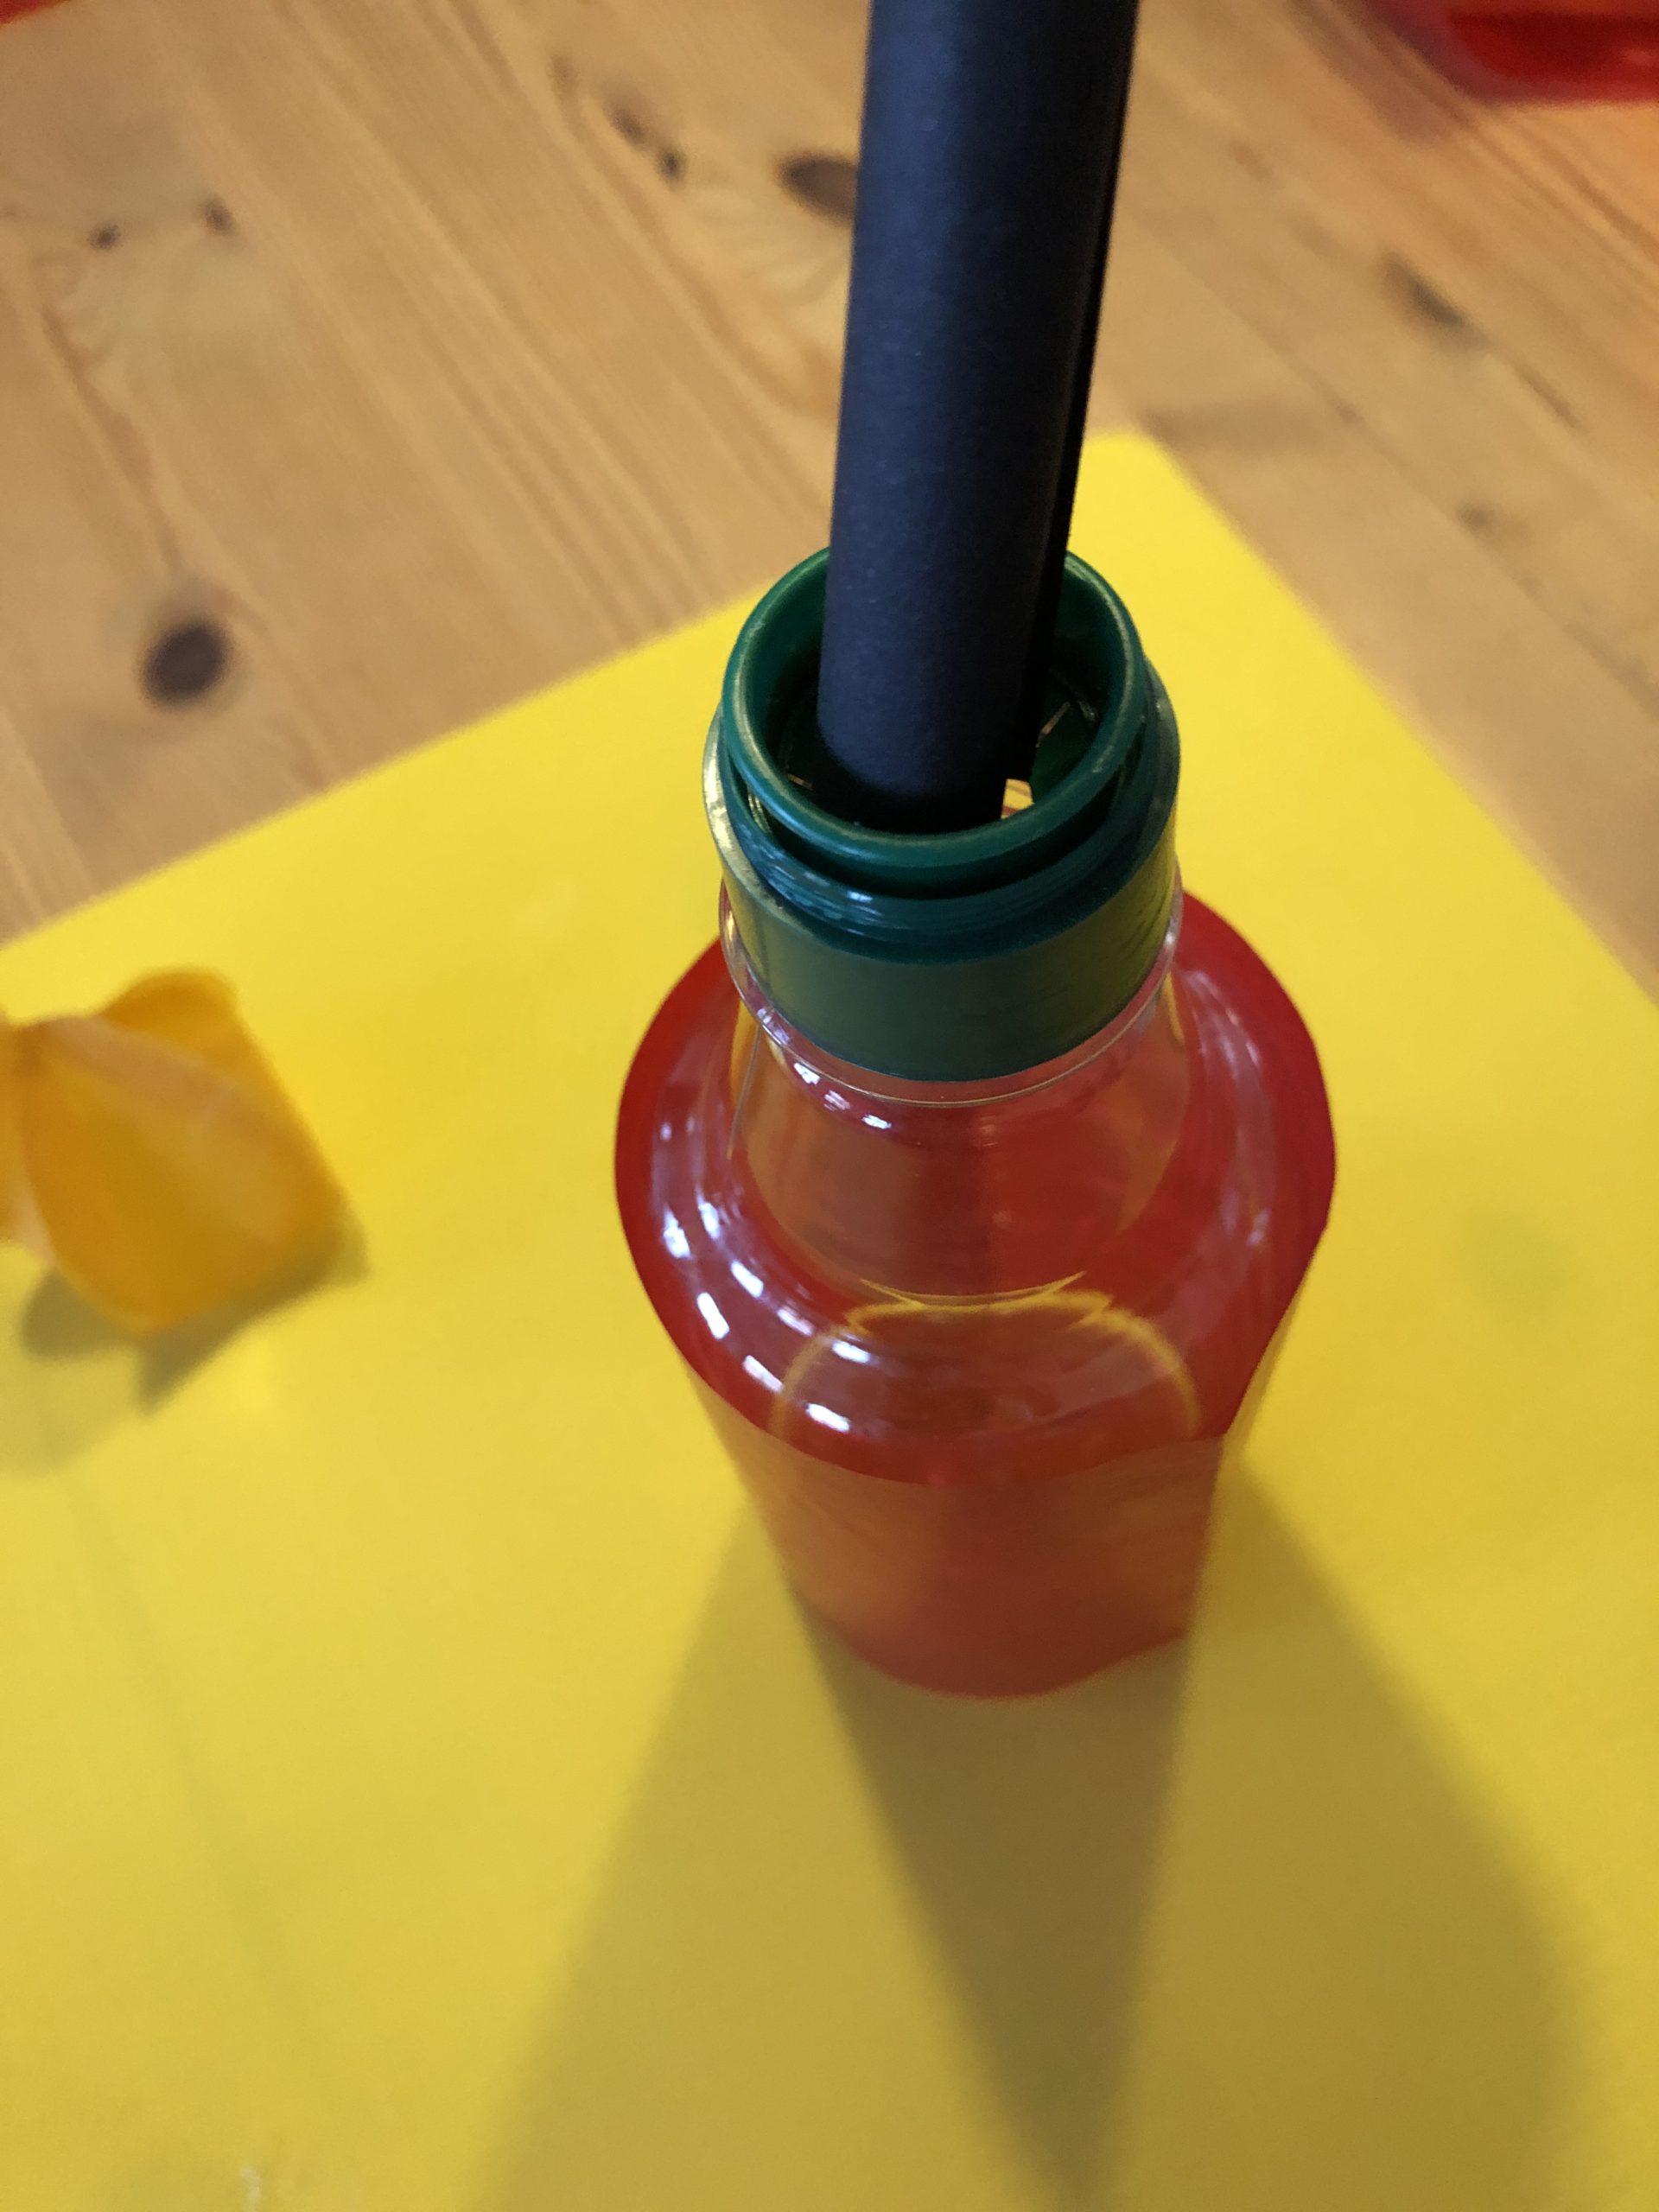 Bild zum Schritt 26 für das Bastel- und DIY-Abenteuer für Kinder: 'Steckt das Röhrchen (oder die Papierrolle) in die Flasche.'